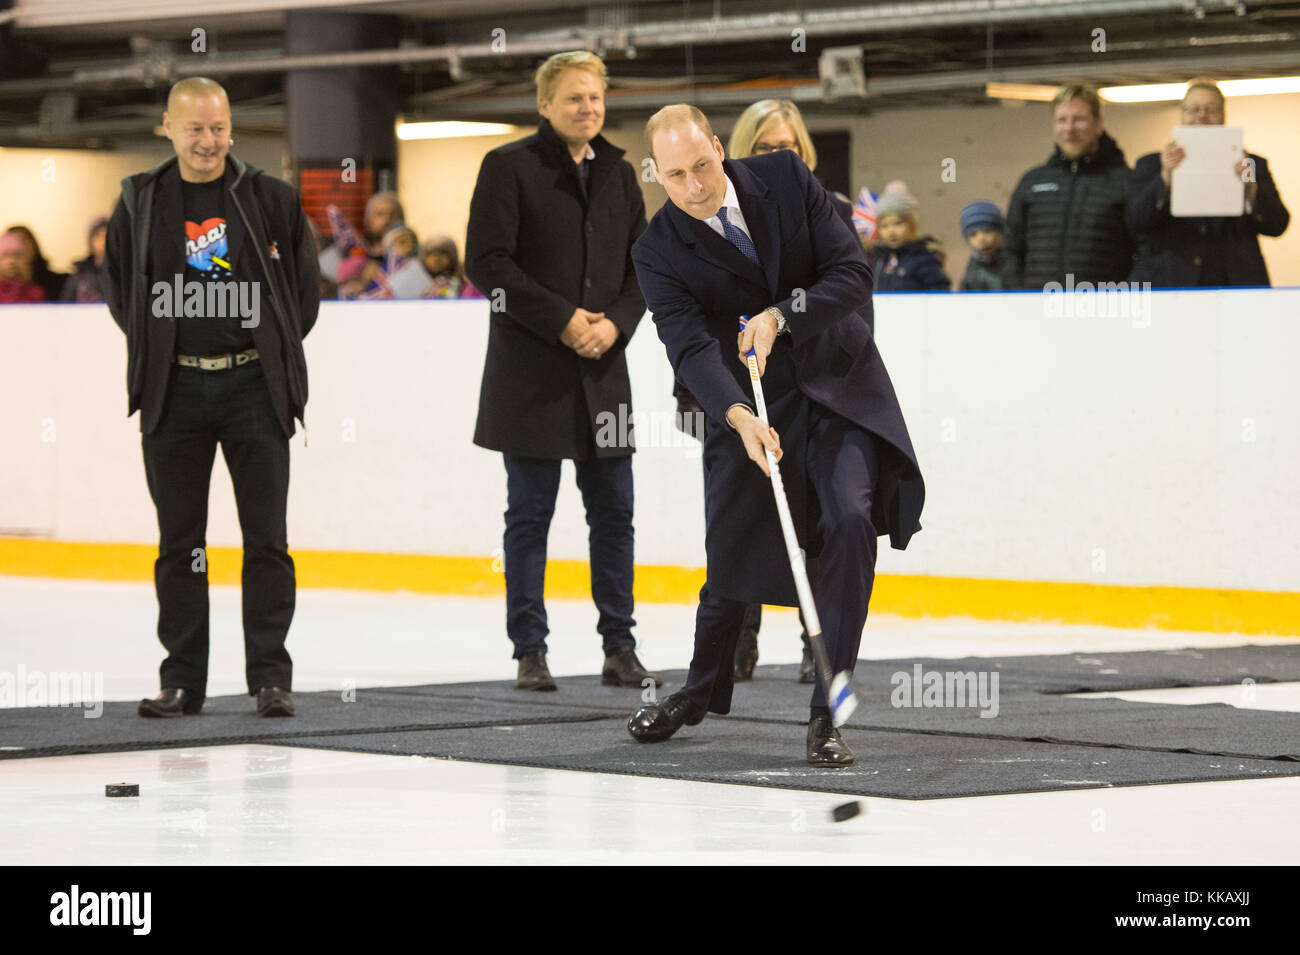 Le duc de Cambridge hits une rondelle de hockey sur glace au cours d'une visite pour voir le travail d'Icehearts bien-être, un organisme de bienfaisance qui utilise le sport pour s'engager avec l'appui et les garçons à risque d'exclusion sociale à la patinoire Salmisaari à Helsinki, en Finlande. Banque D'Images